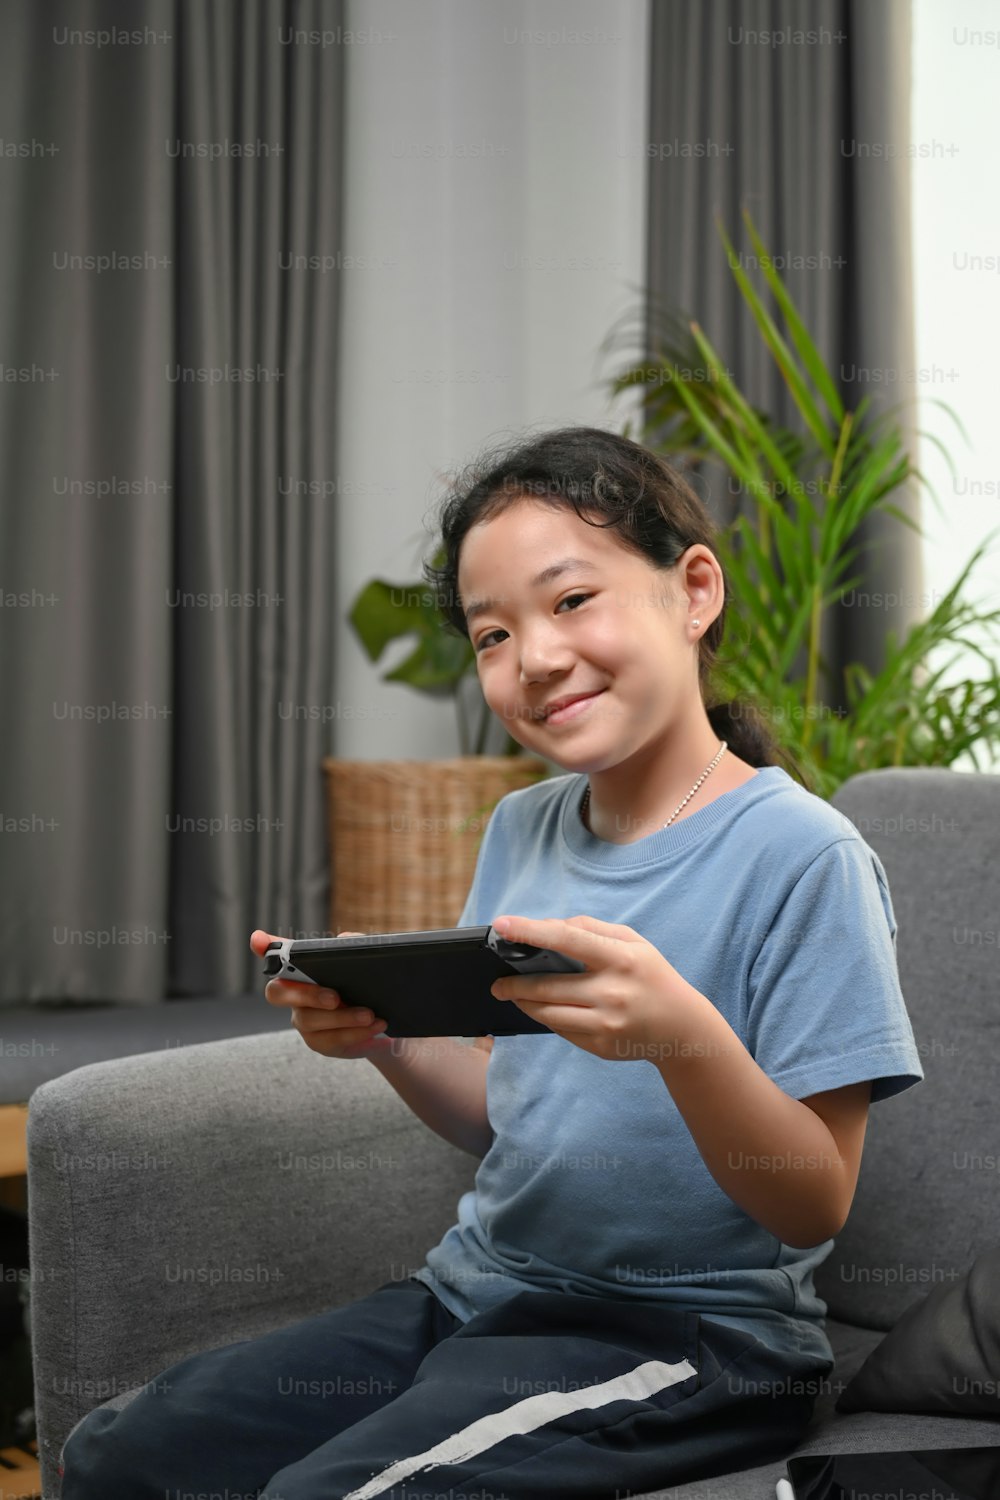 Retrato de una niña feliz jugando a un videojuego mientras está sentada en el sofá de su casa.